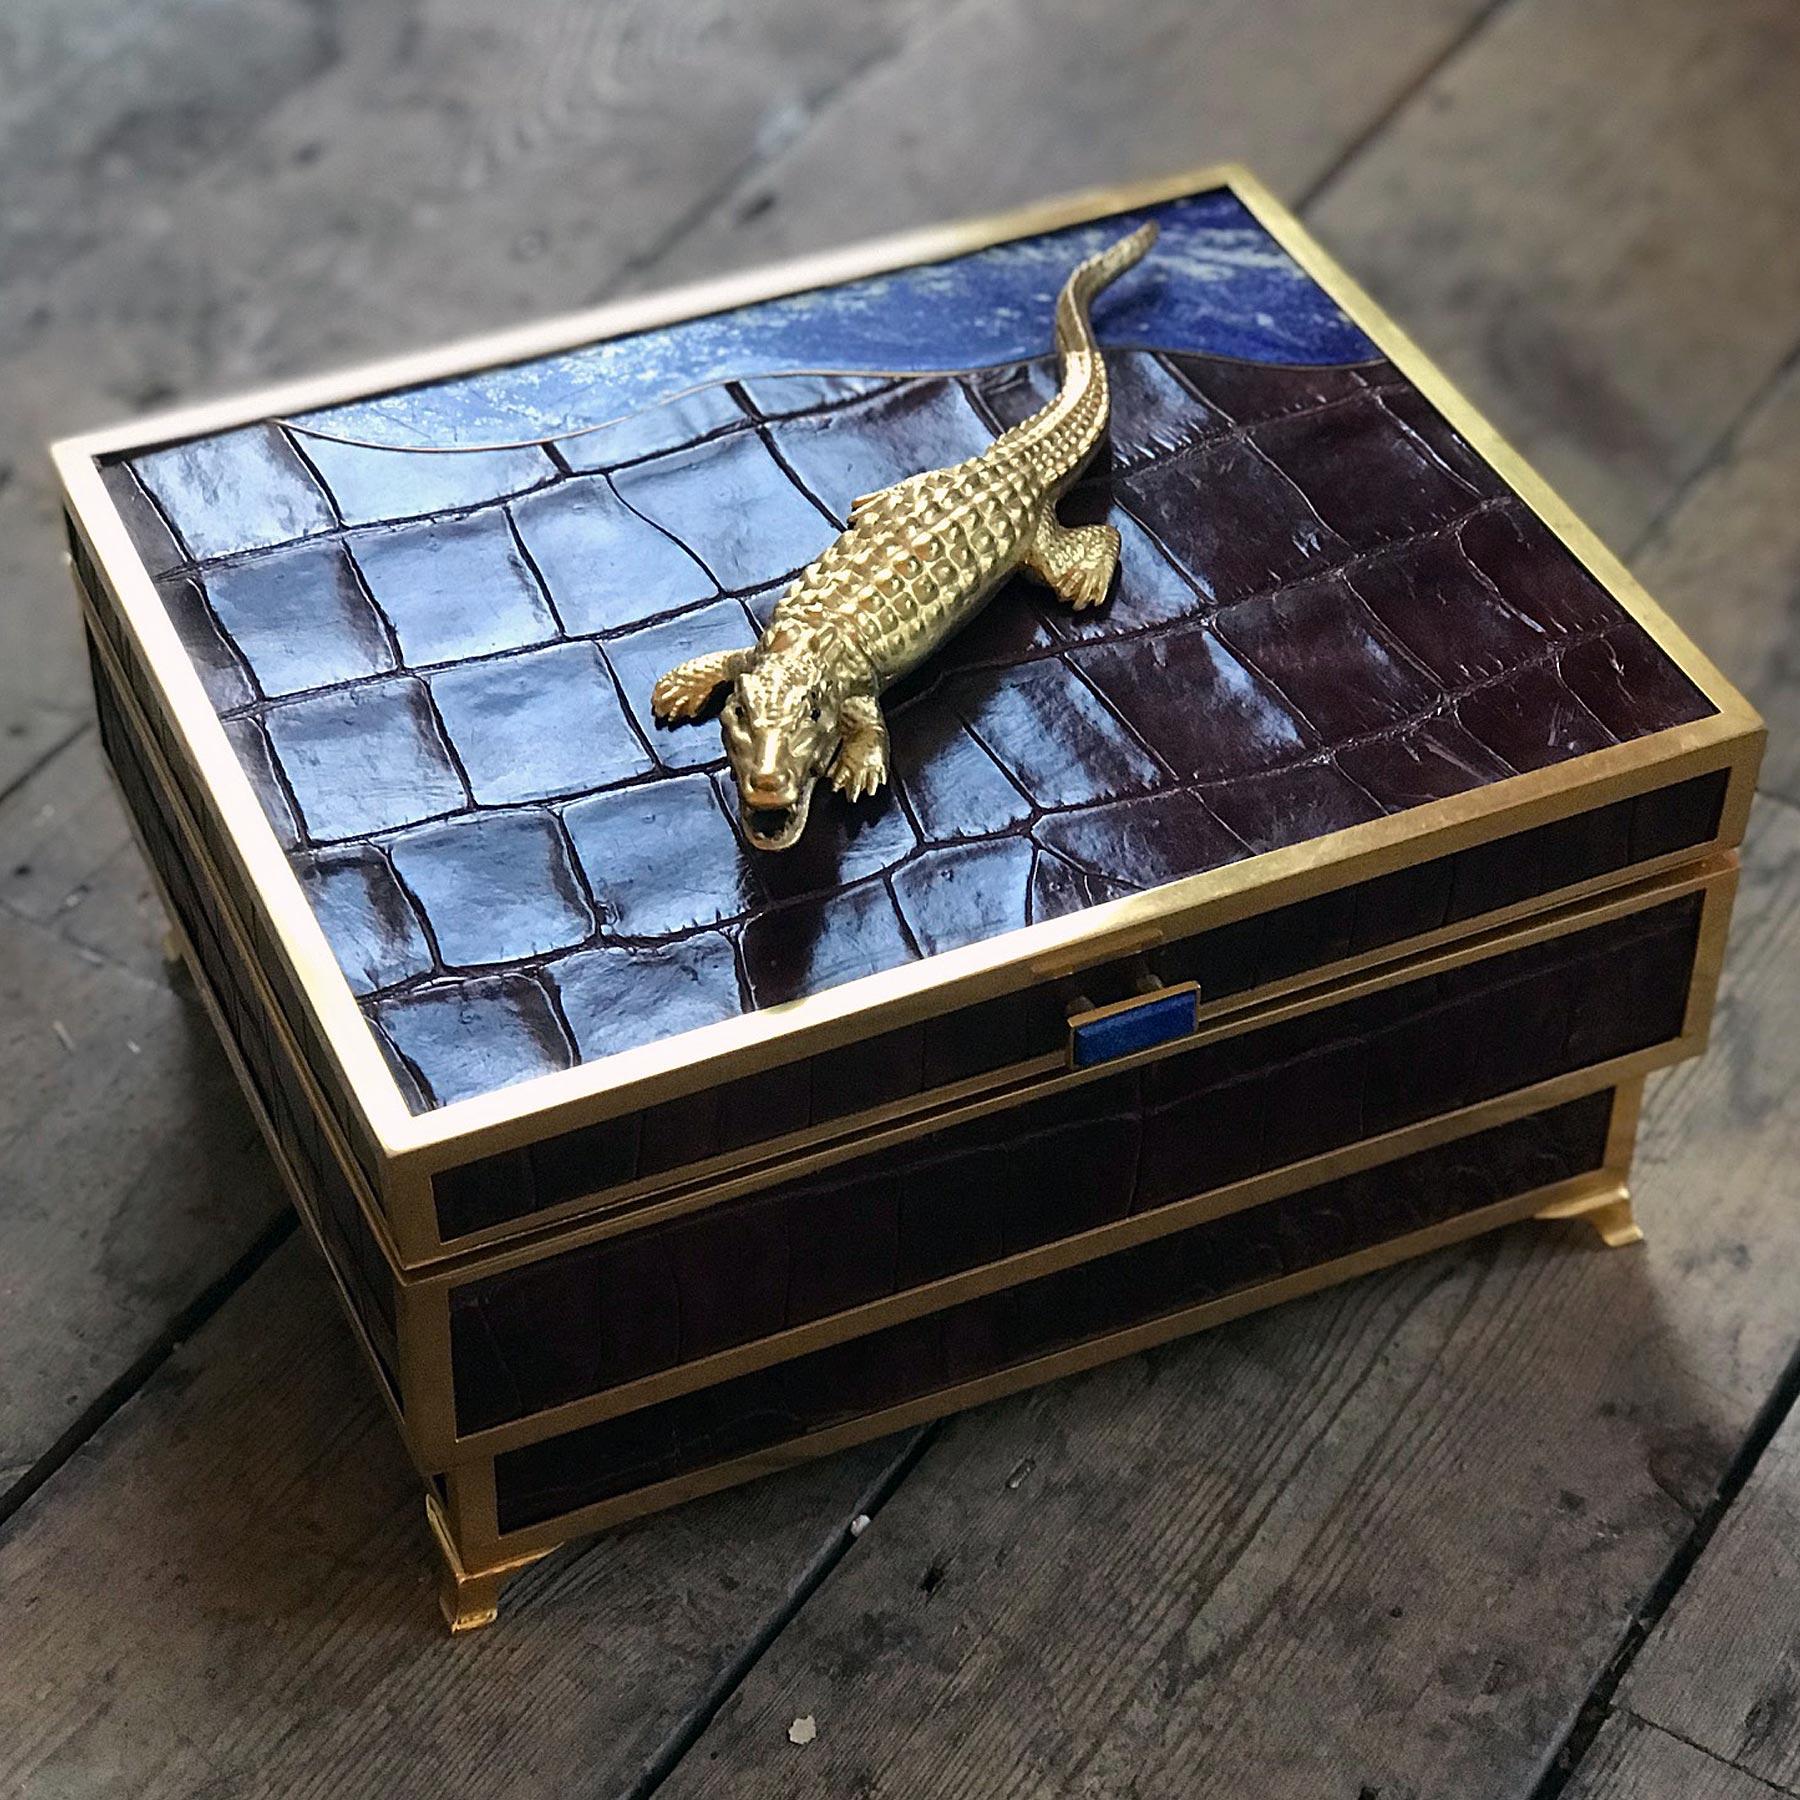 Ein beeindruckender Feuchtmittel von Glynn Lockett, der mit Krokodillederhaut und vergoldeten Beschlägen versehen ist.

Die Oberseite ist mit einem Krokodil mit Saphiraugen verziert, neben einer wellenförmigen Lapislazuliplatte, die einen Fluss